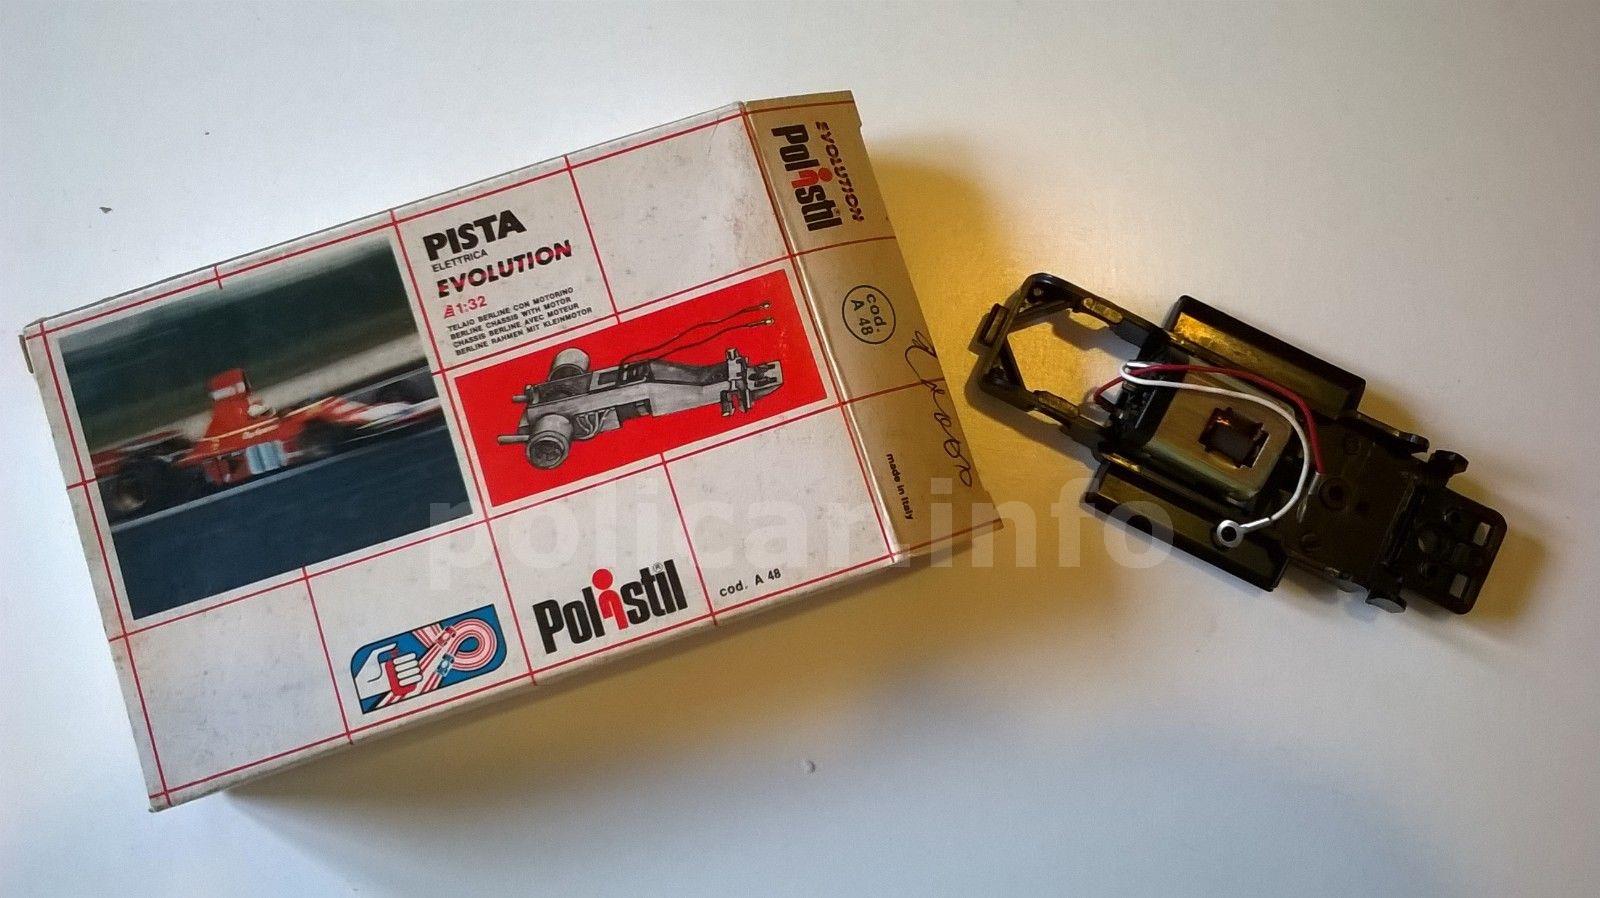 Slotcar Policar Polistil Evolution Motore e telaio per Prototipi 3a serie